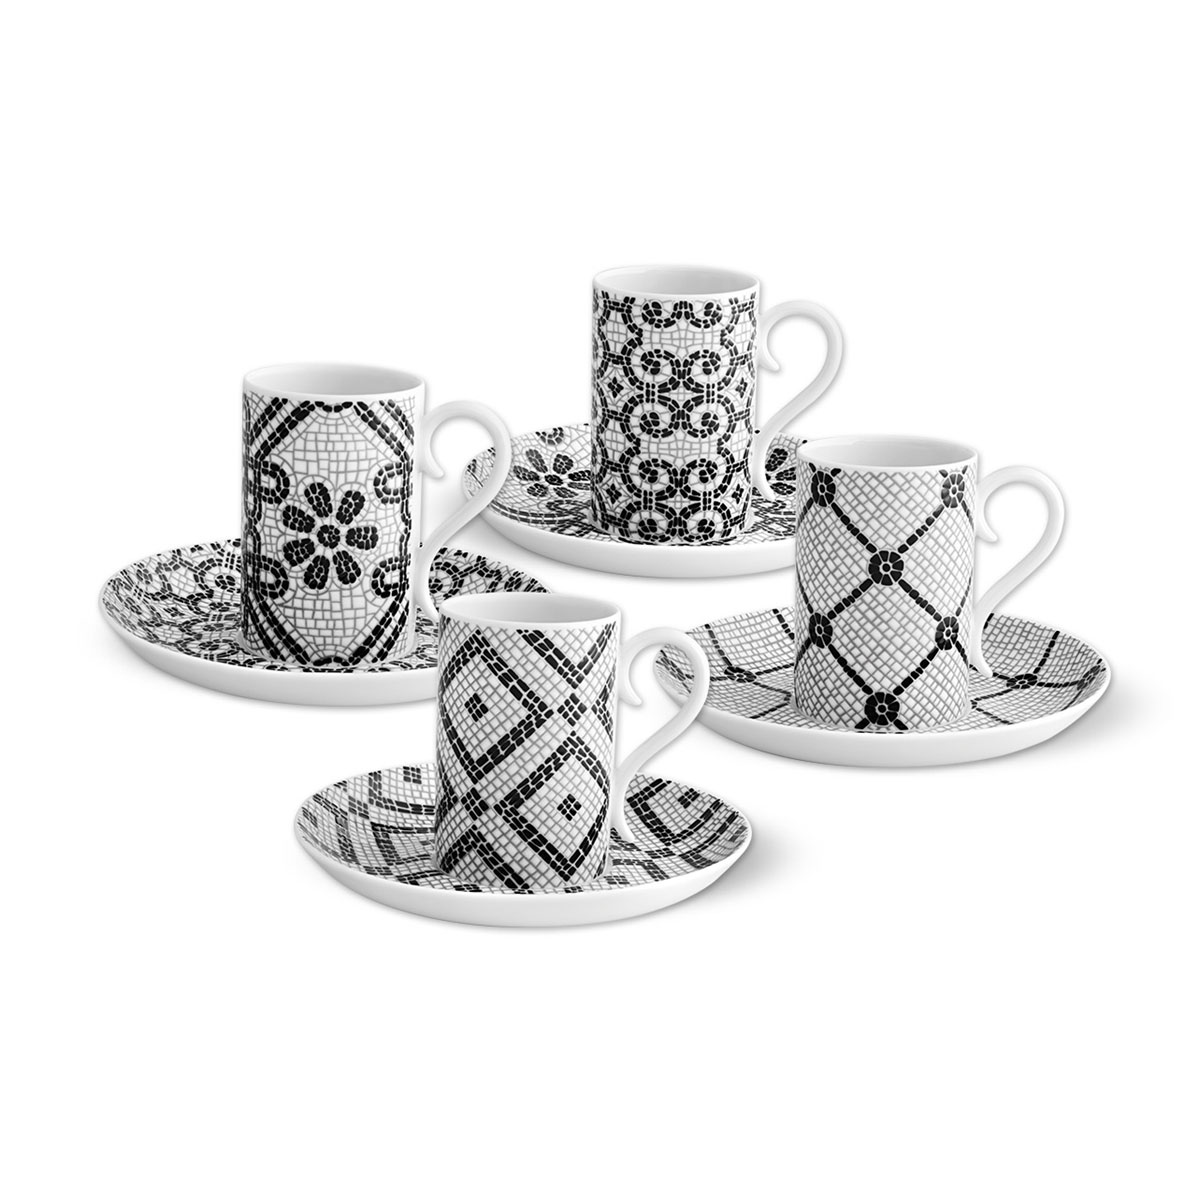 Vista Alegre Porcelain Calcada Portuguesa Set 4 Coffee Cups and Saucers